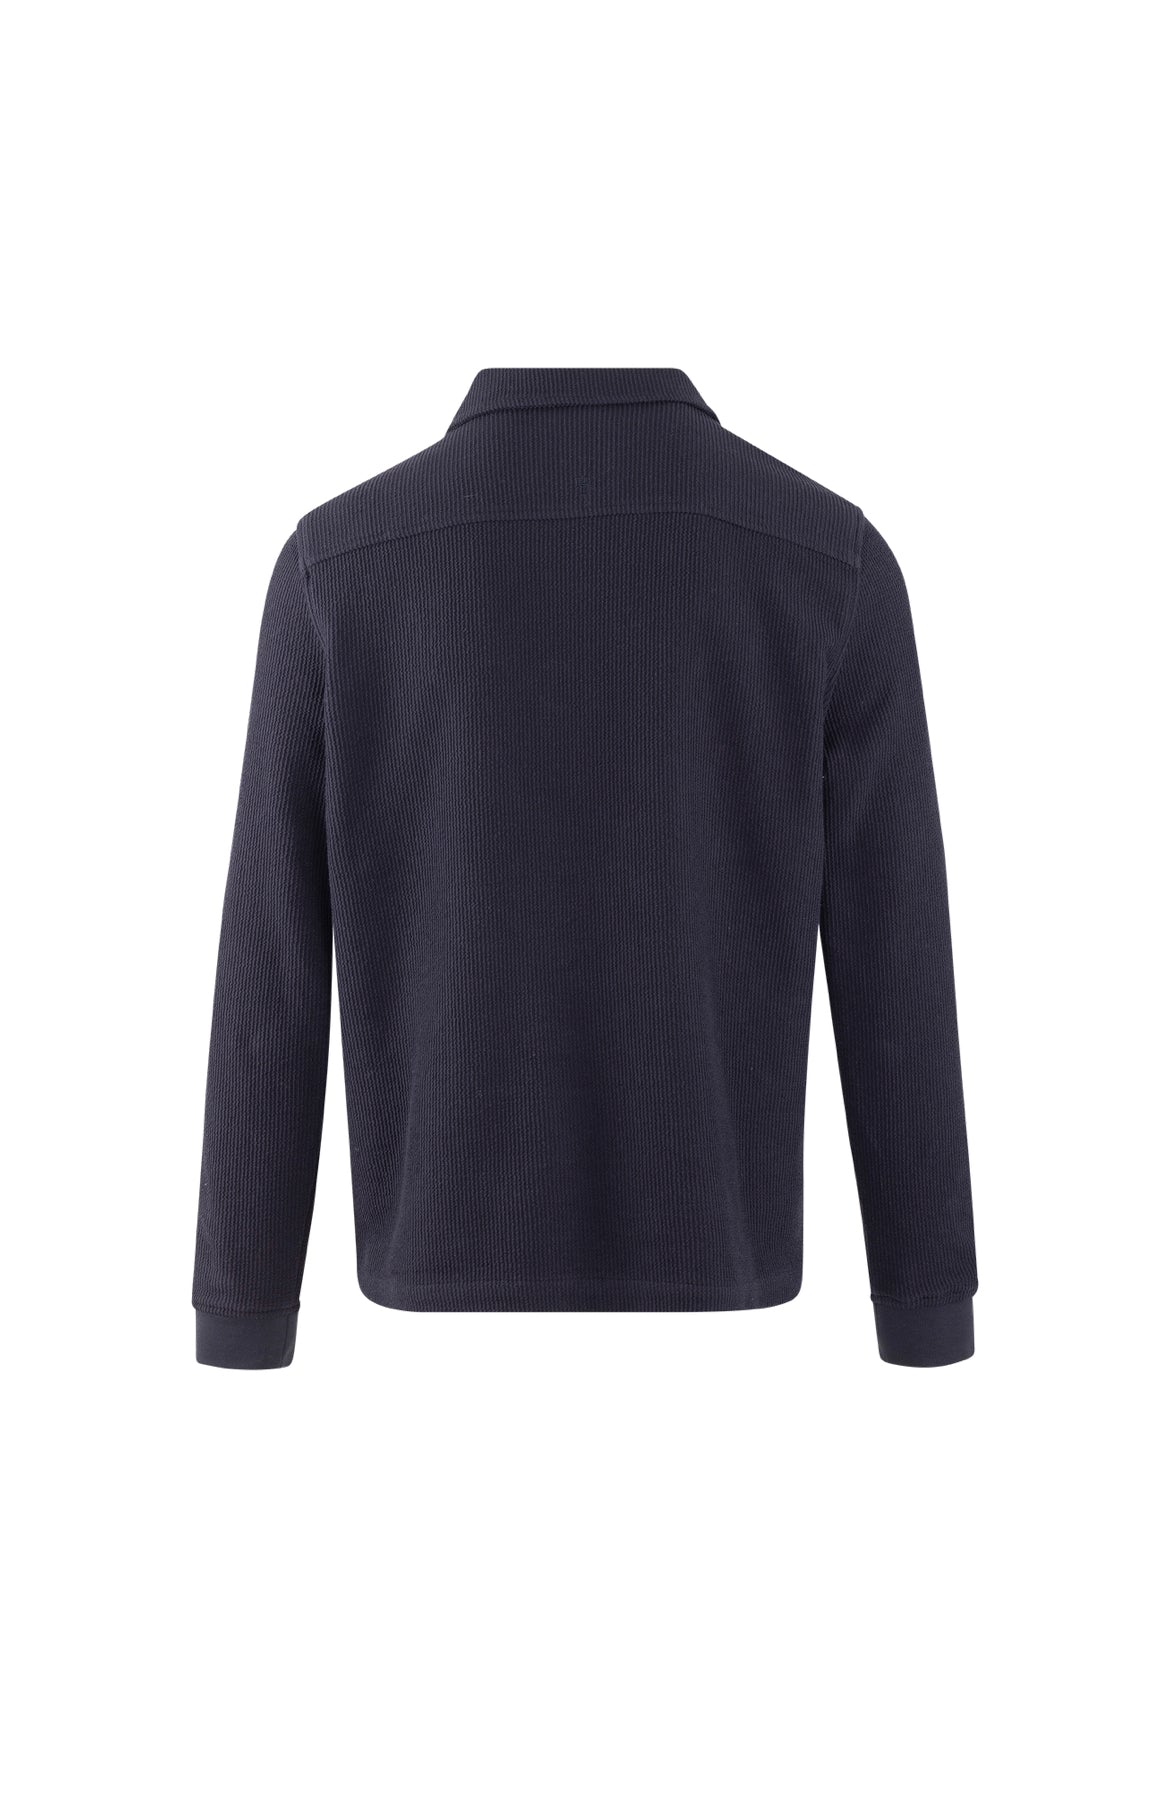 Urban Pioneers Emanuel Half-zip Navy Cotton structure sweater